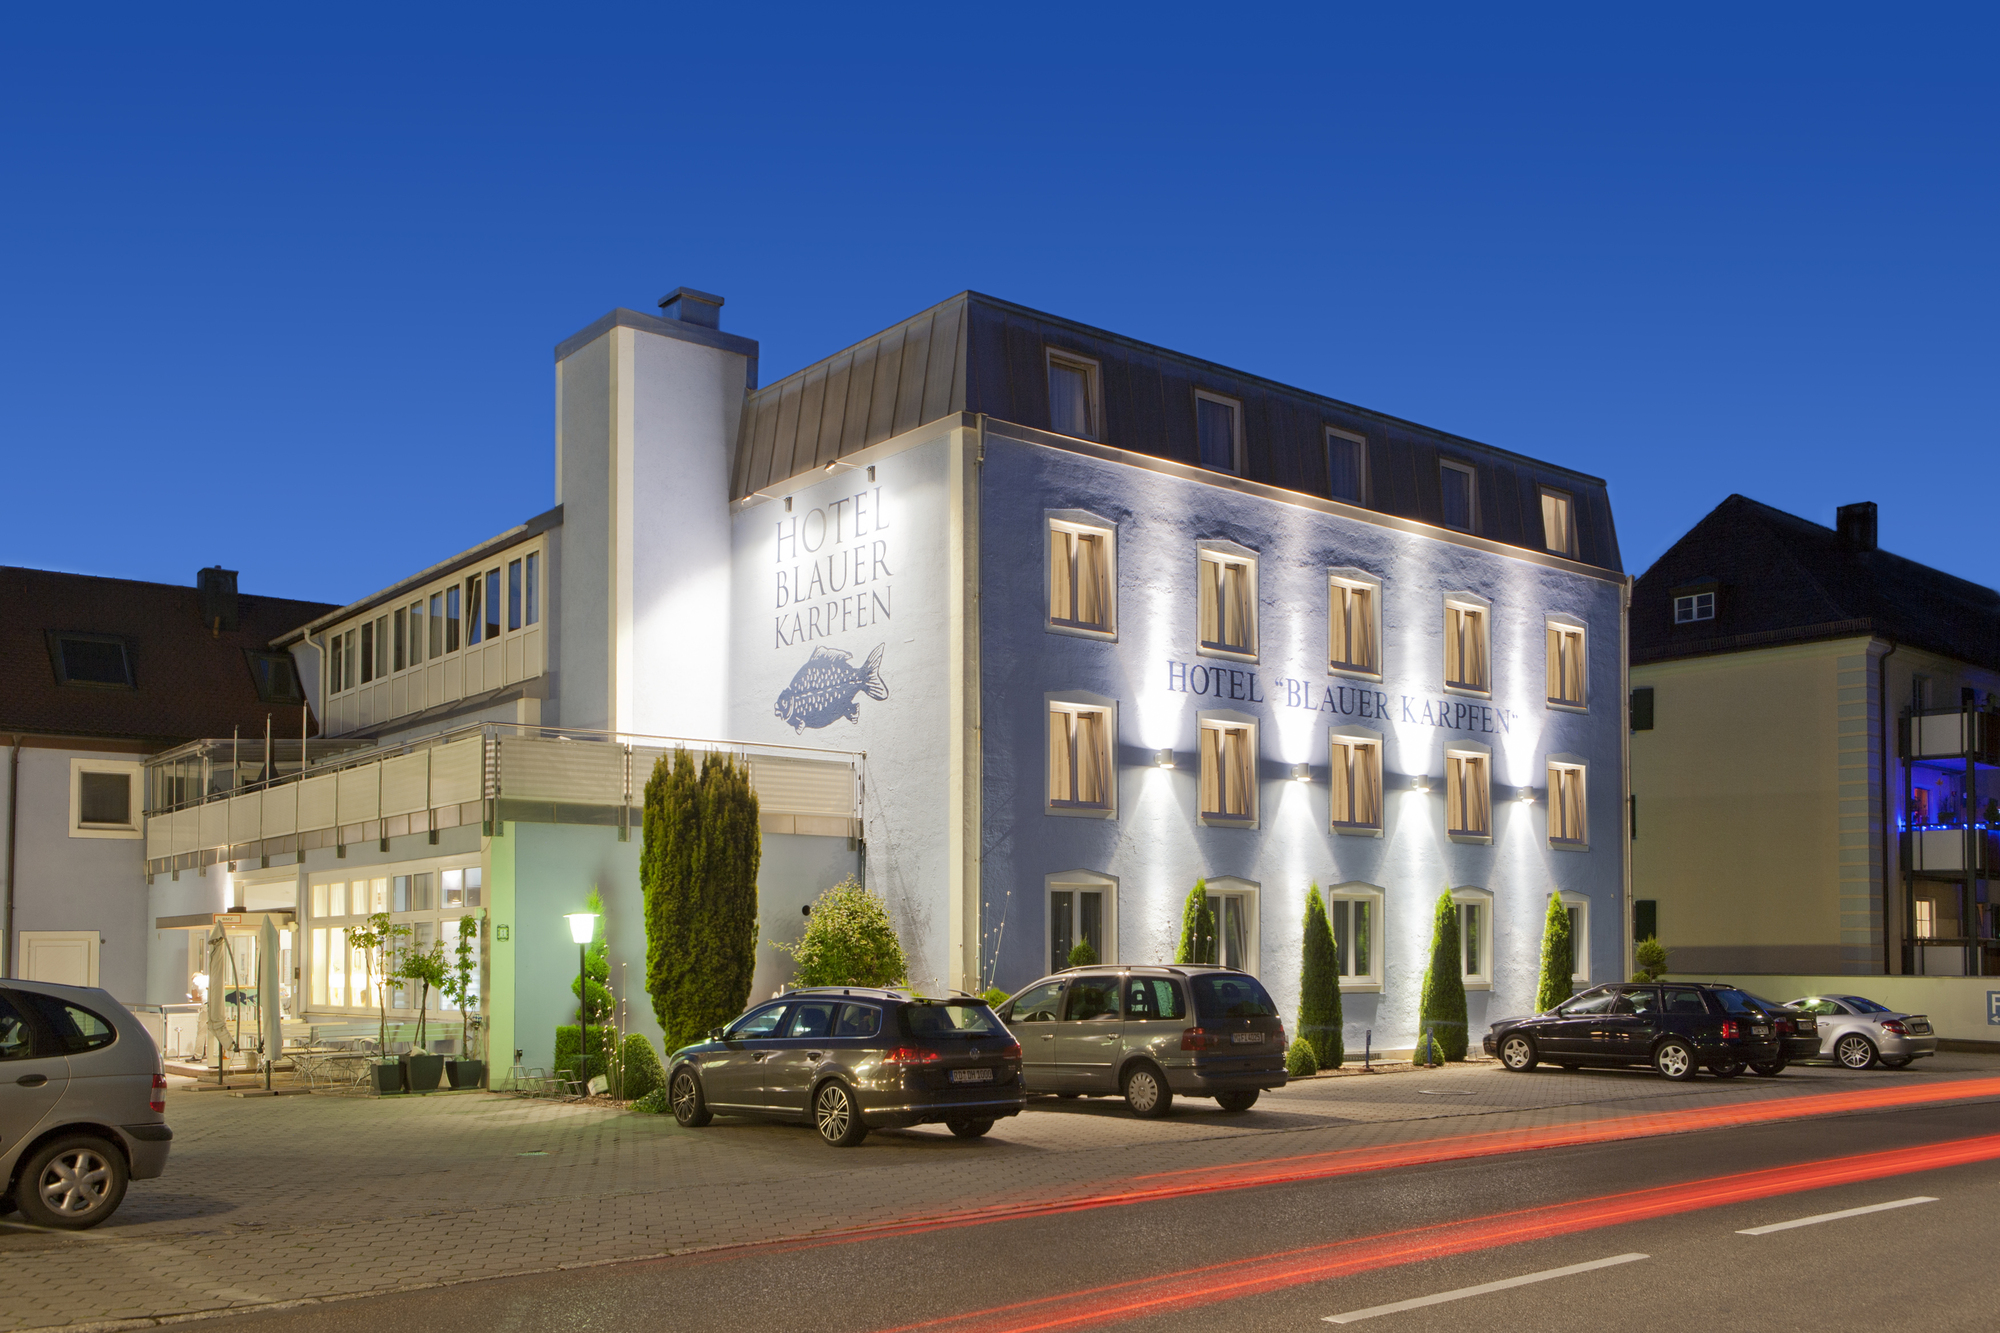 Hotel blauer Karpfen, electronica - Messe Hotel in Oberschleißheim bei München